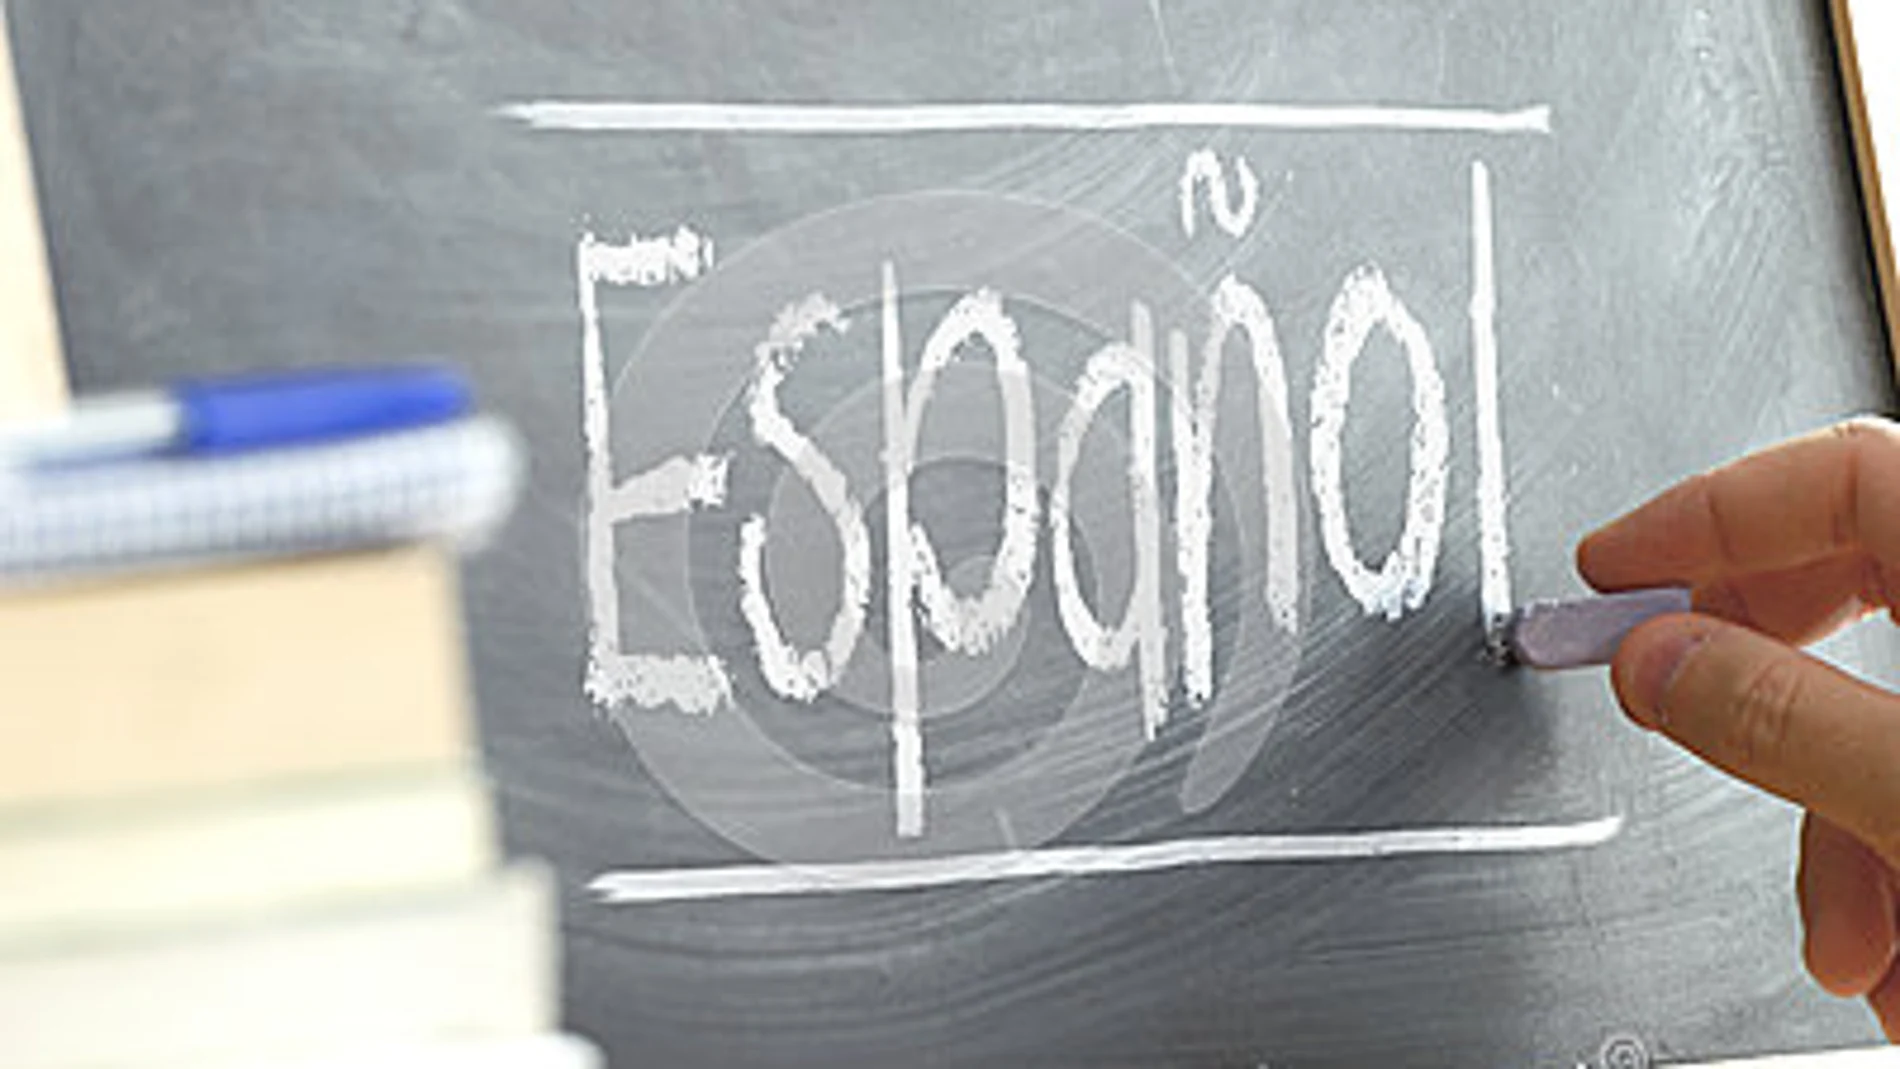 El español imparable: 200 millones de nuevos hablantes cada 25 años